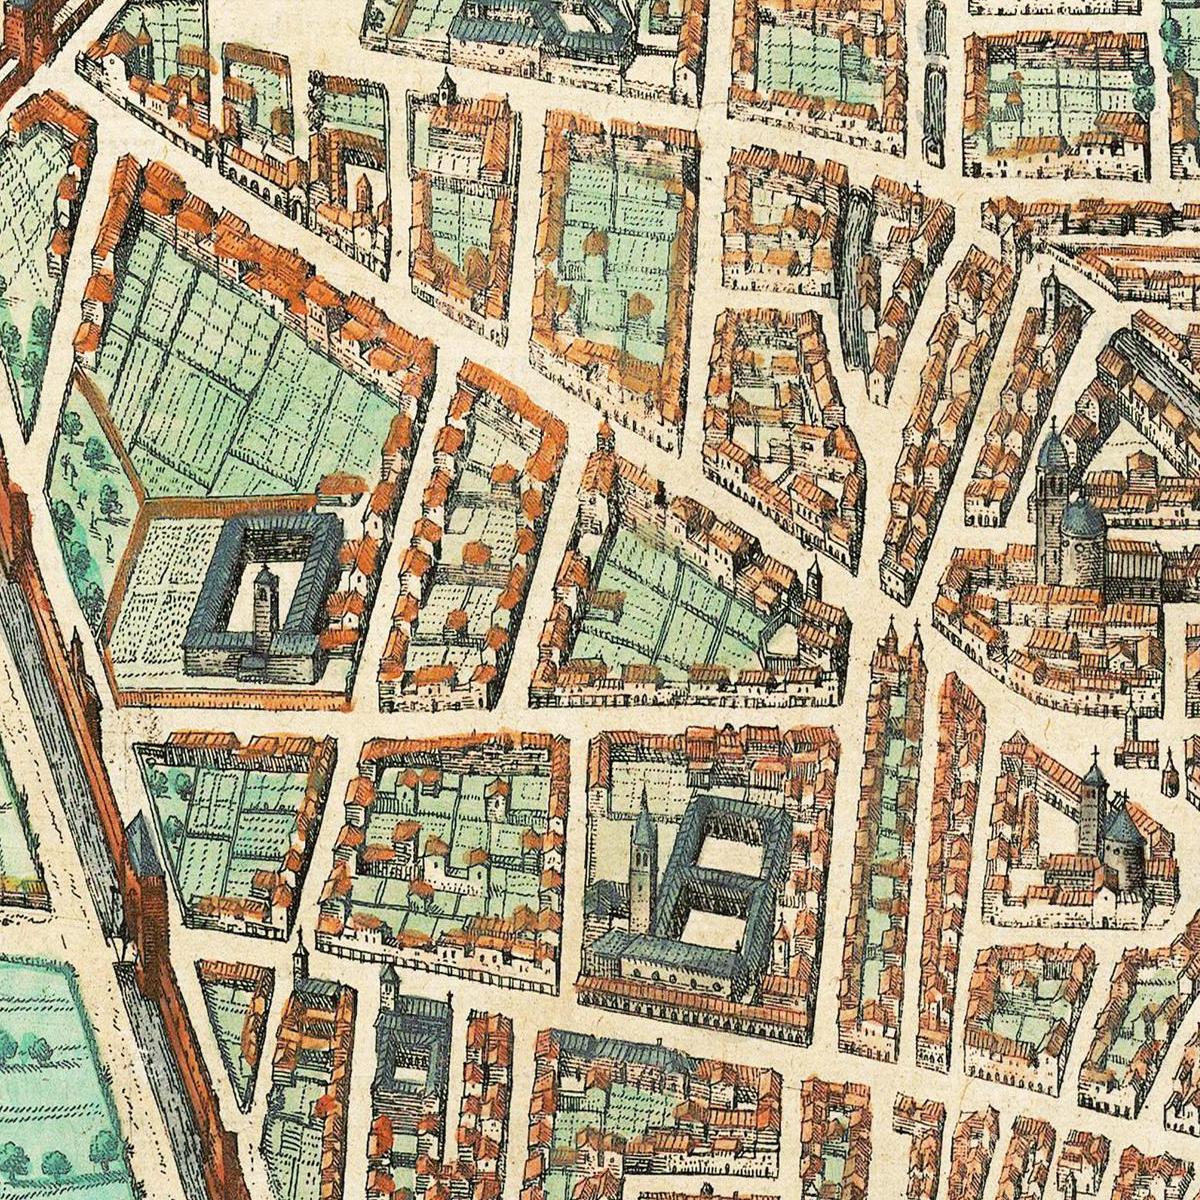 Historische Stadtansicht Bologna um 1609